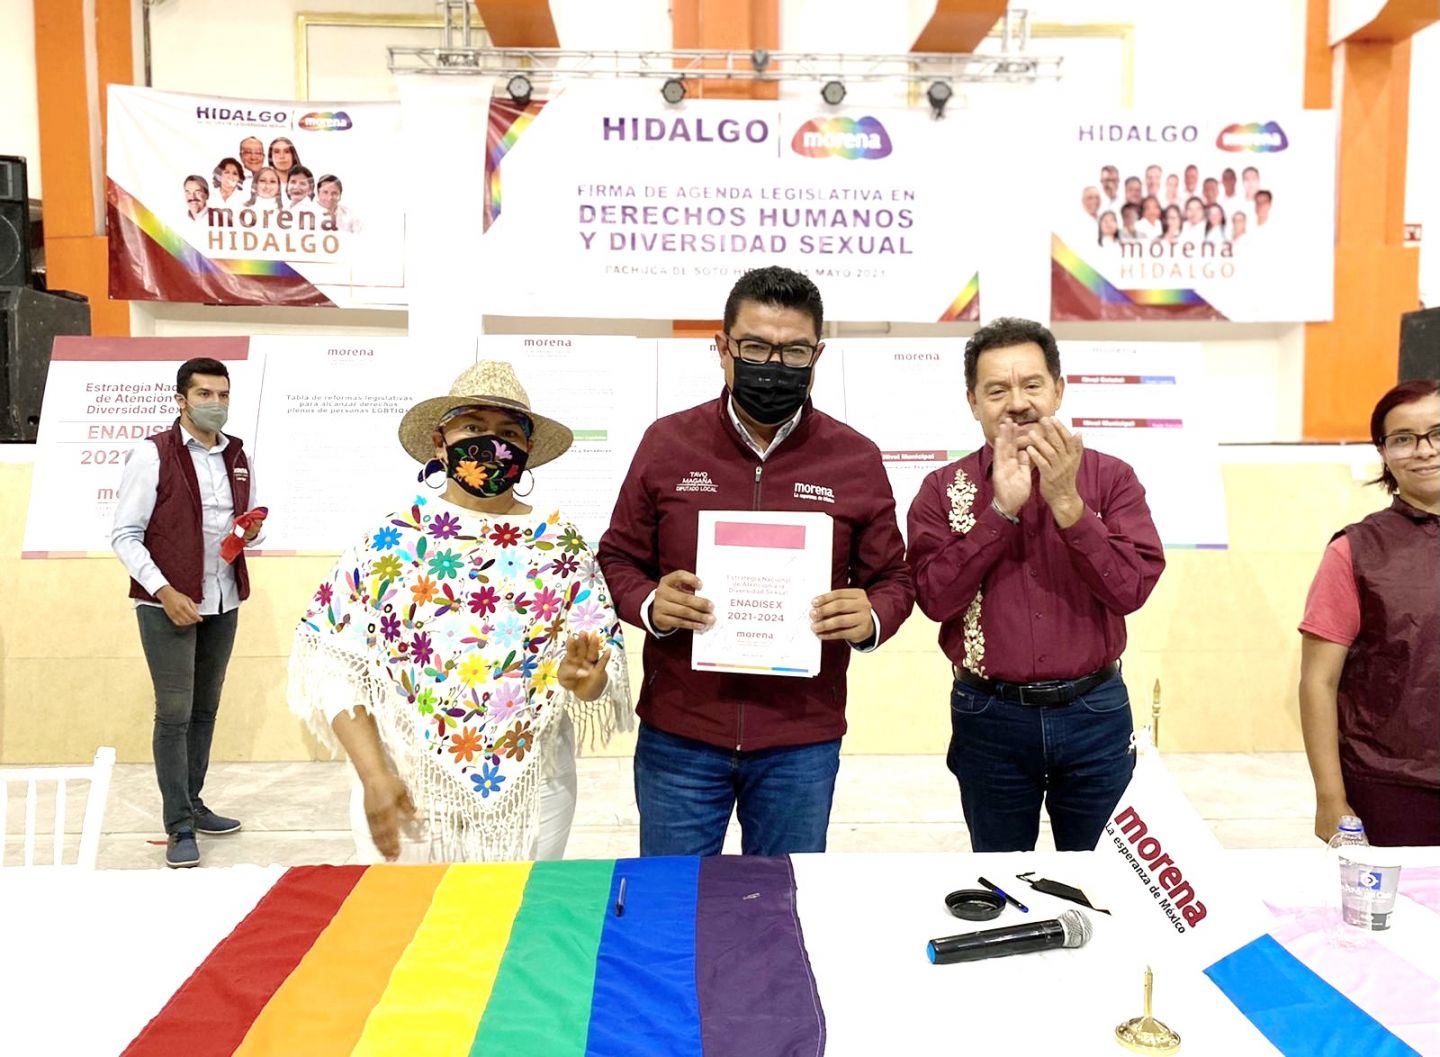 Tavo Magaña firma agenda legislativa en derechos humanos y diversidad sexual 